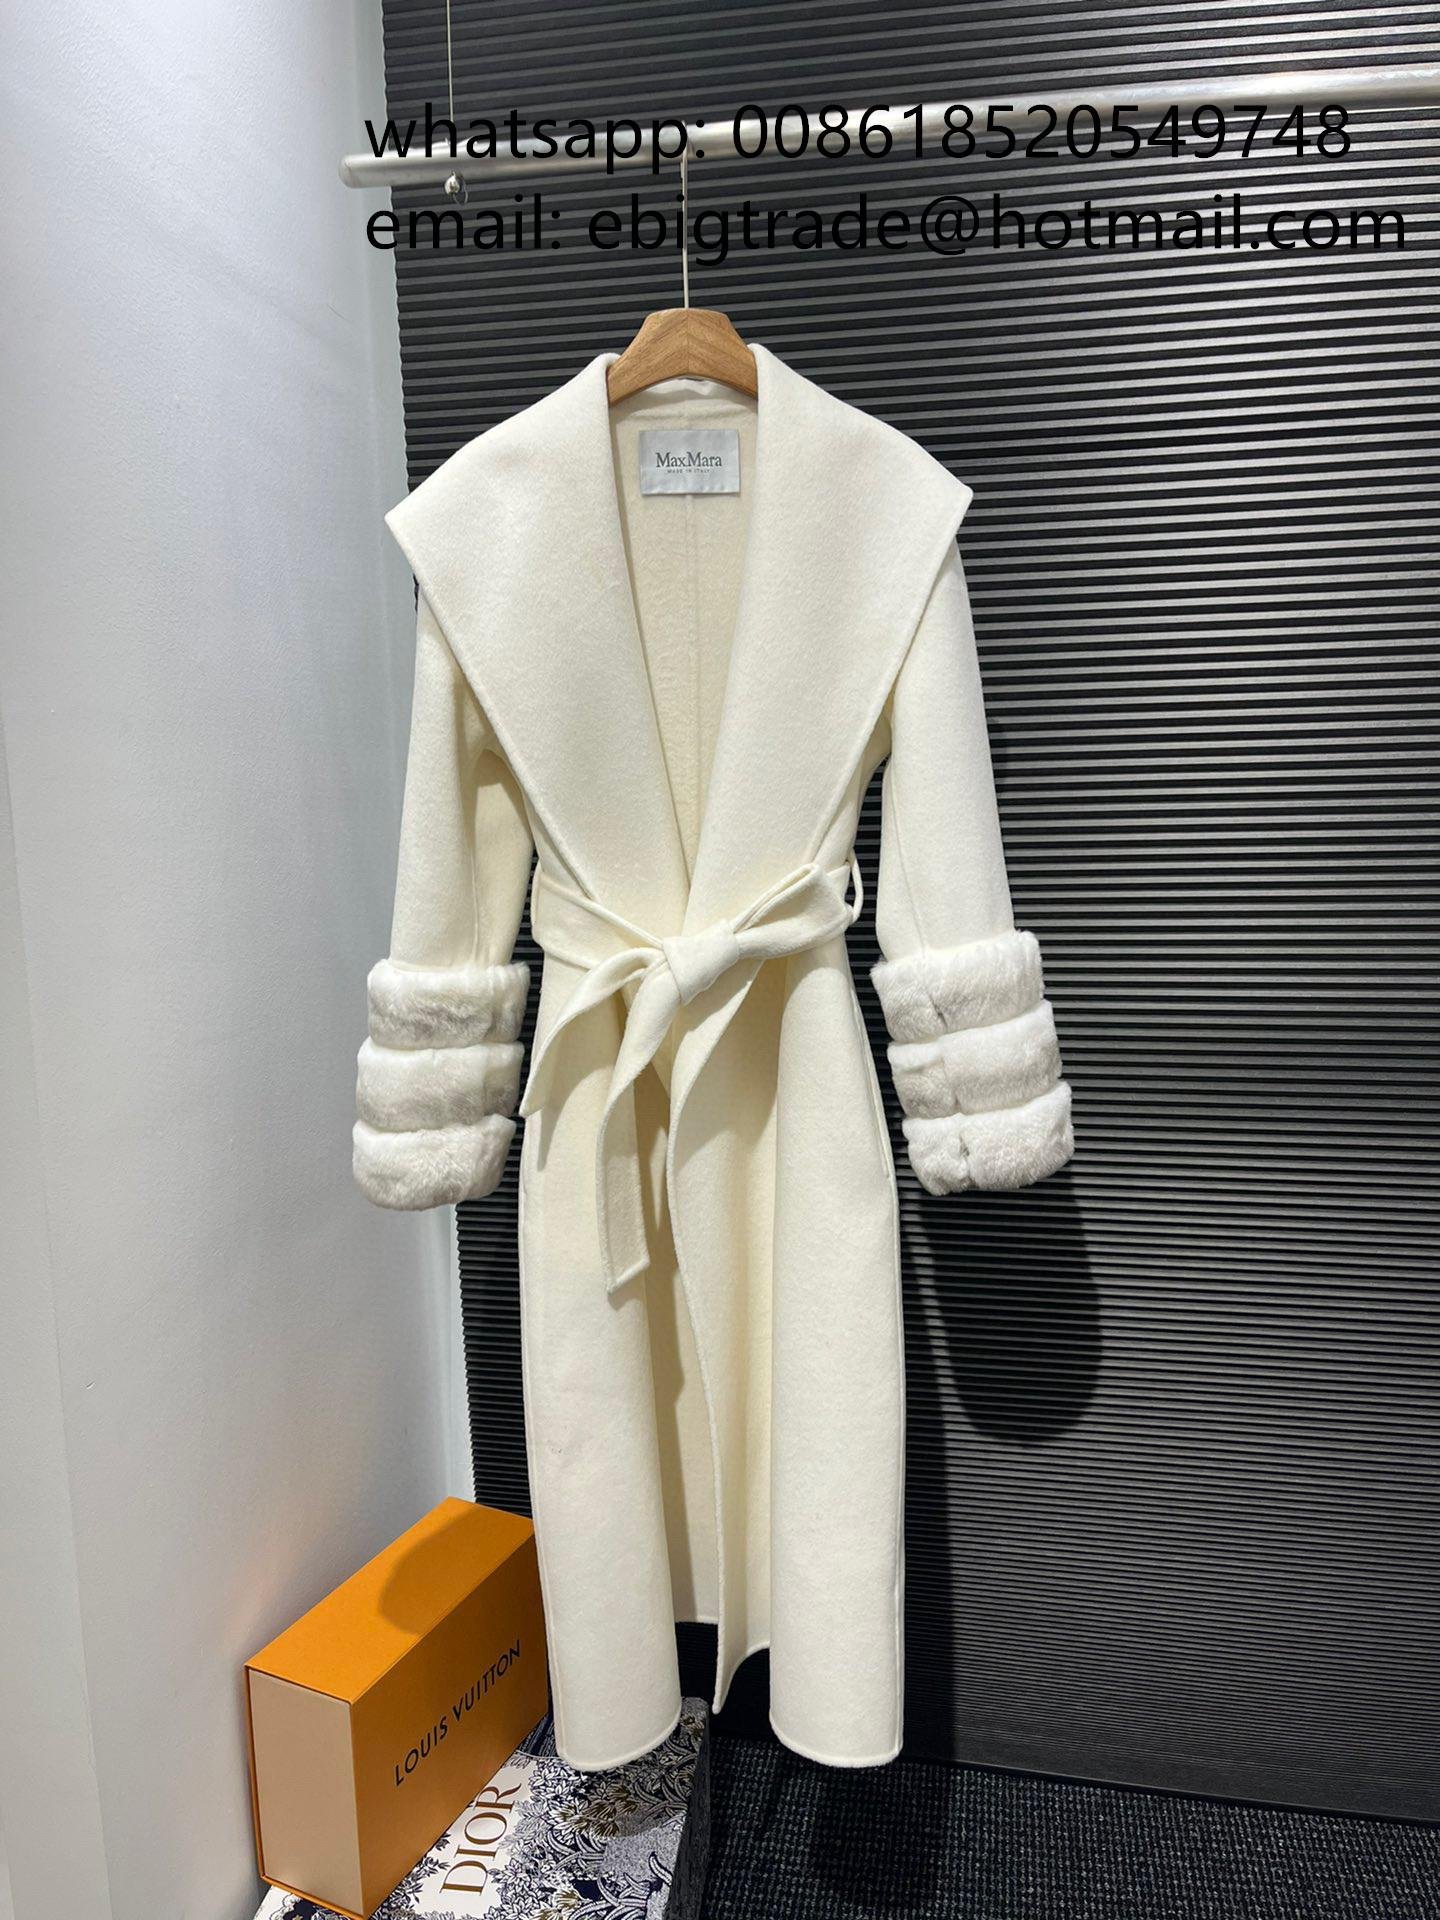 Discount Max Mara Online Outlet Max Mara Wool Cashmere Robe Coat Max Mara Coat 2